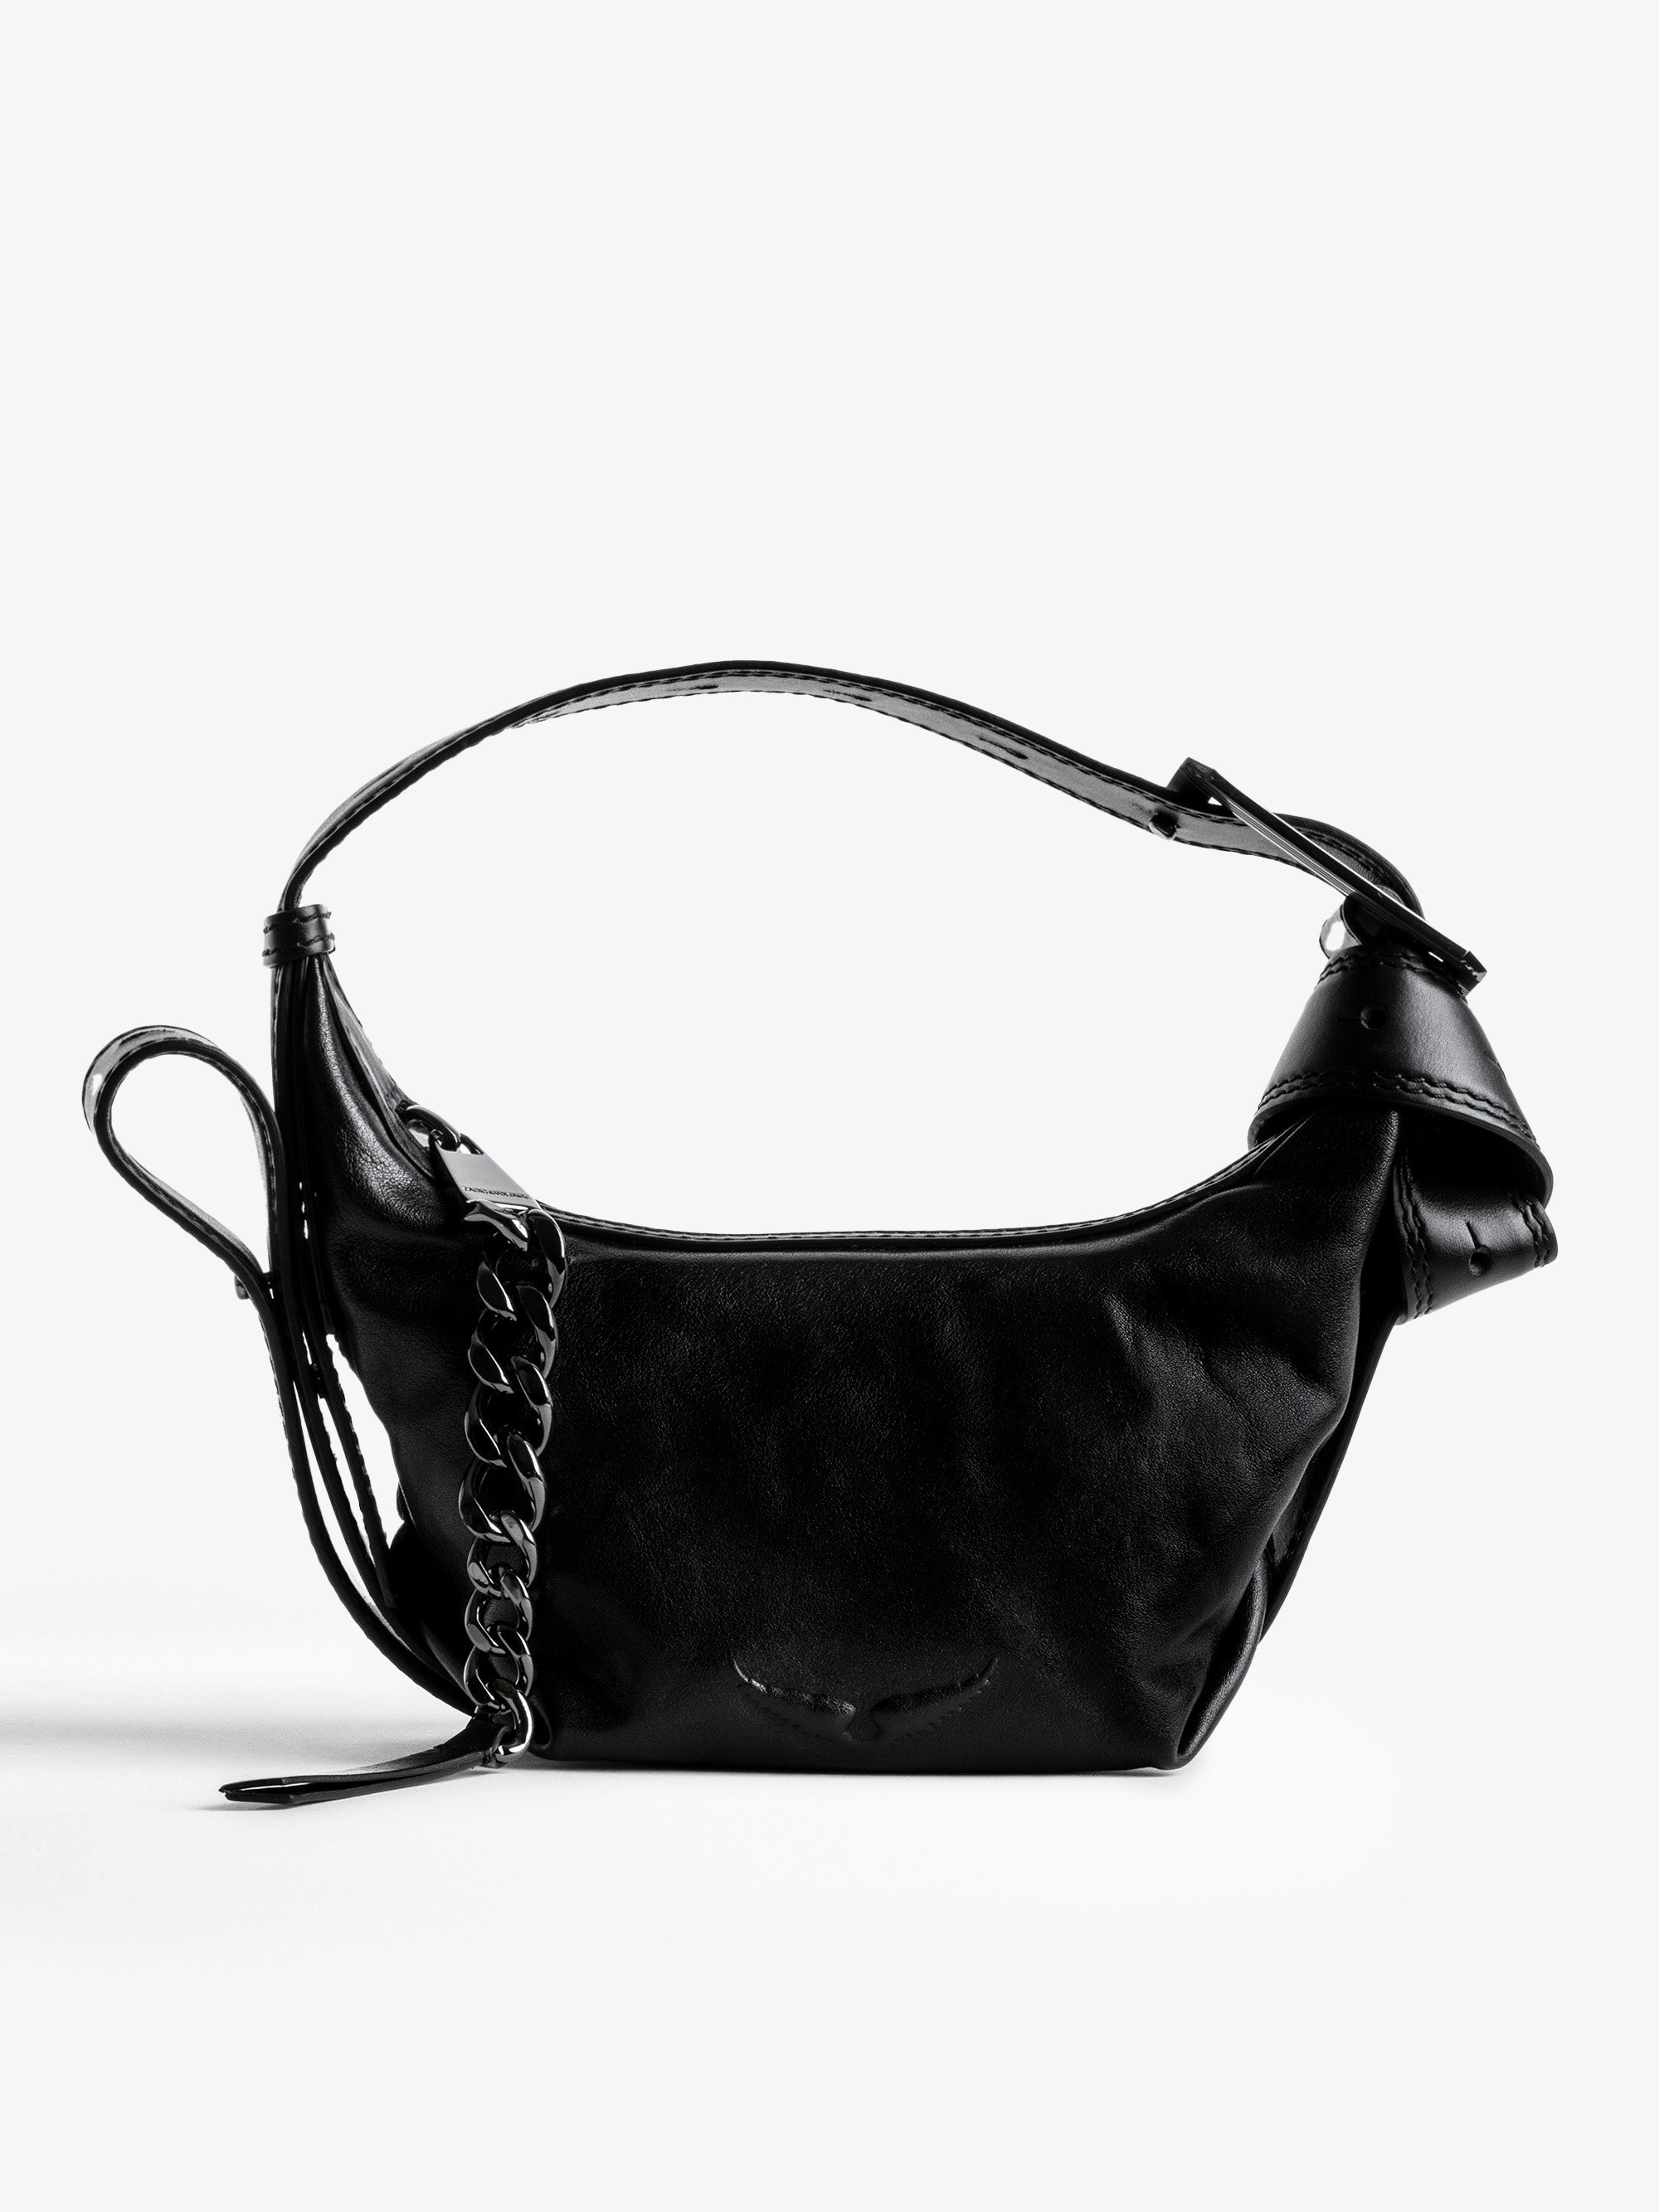 Handtasche Le Cecilia XS - Ikonische Damen-Handtasche Le Cecilia XS aus schwarzem, pflanzlich gegerbtem, italienischem Leder.